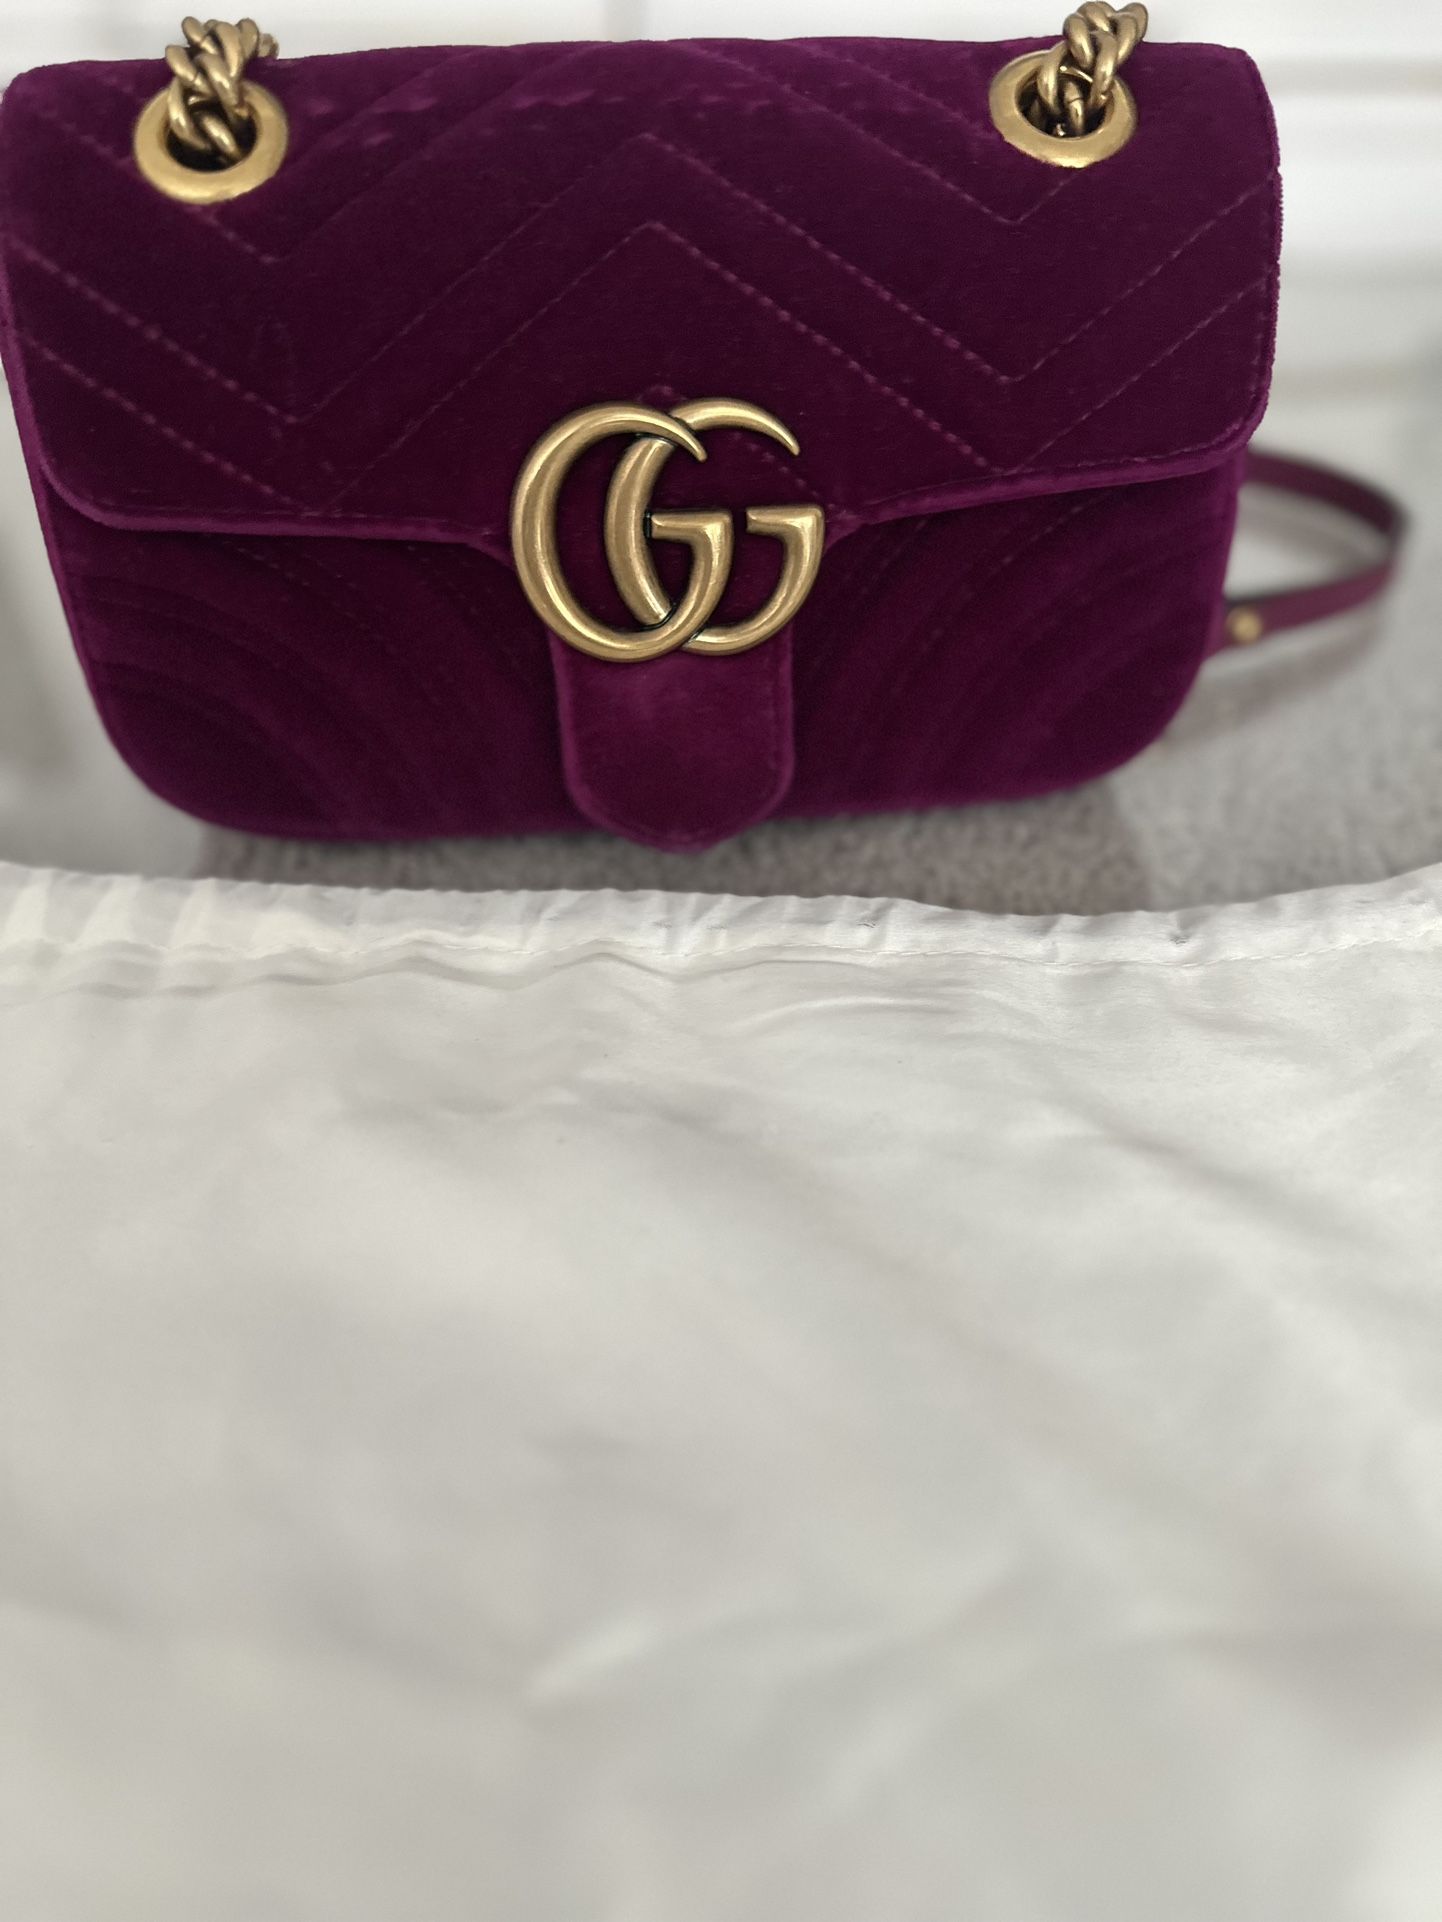 Gucci Marmont Purple Velvet Bag.